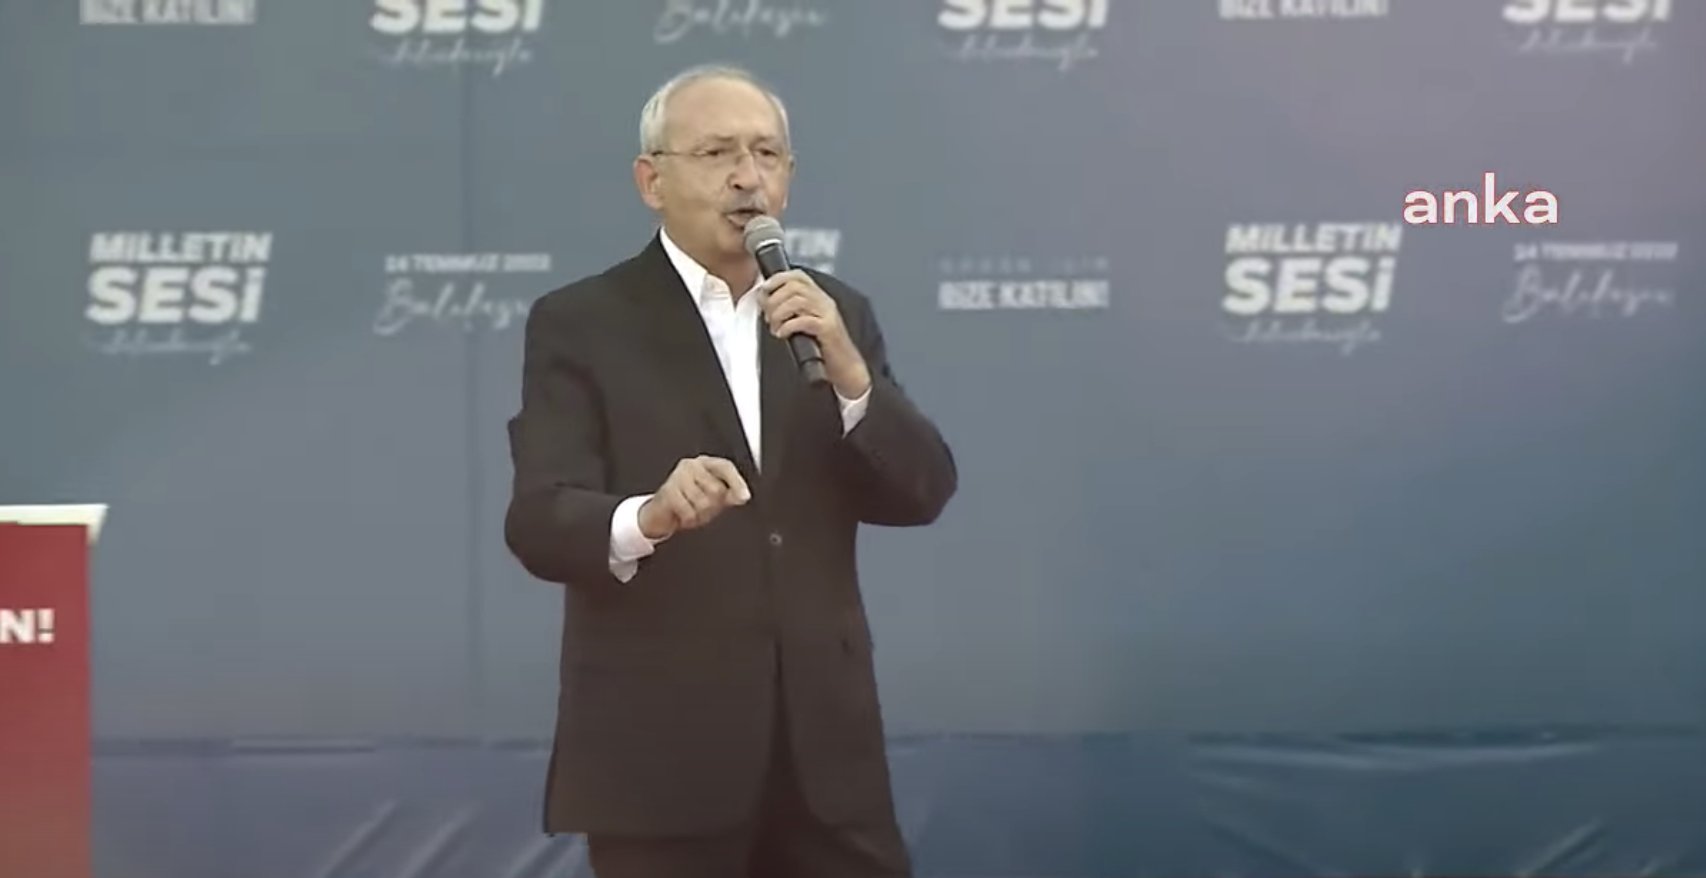 Kılıçdaroğlu: Bir değişim çığlığı var, değişimi yapacağız